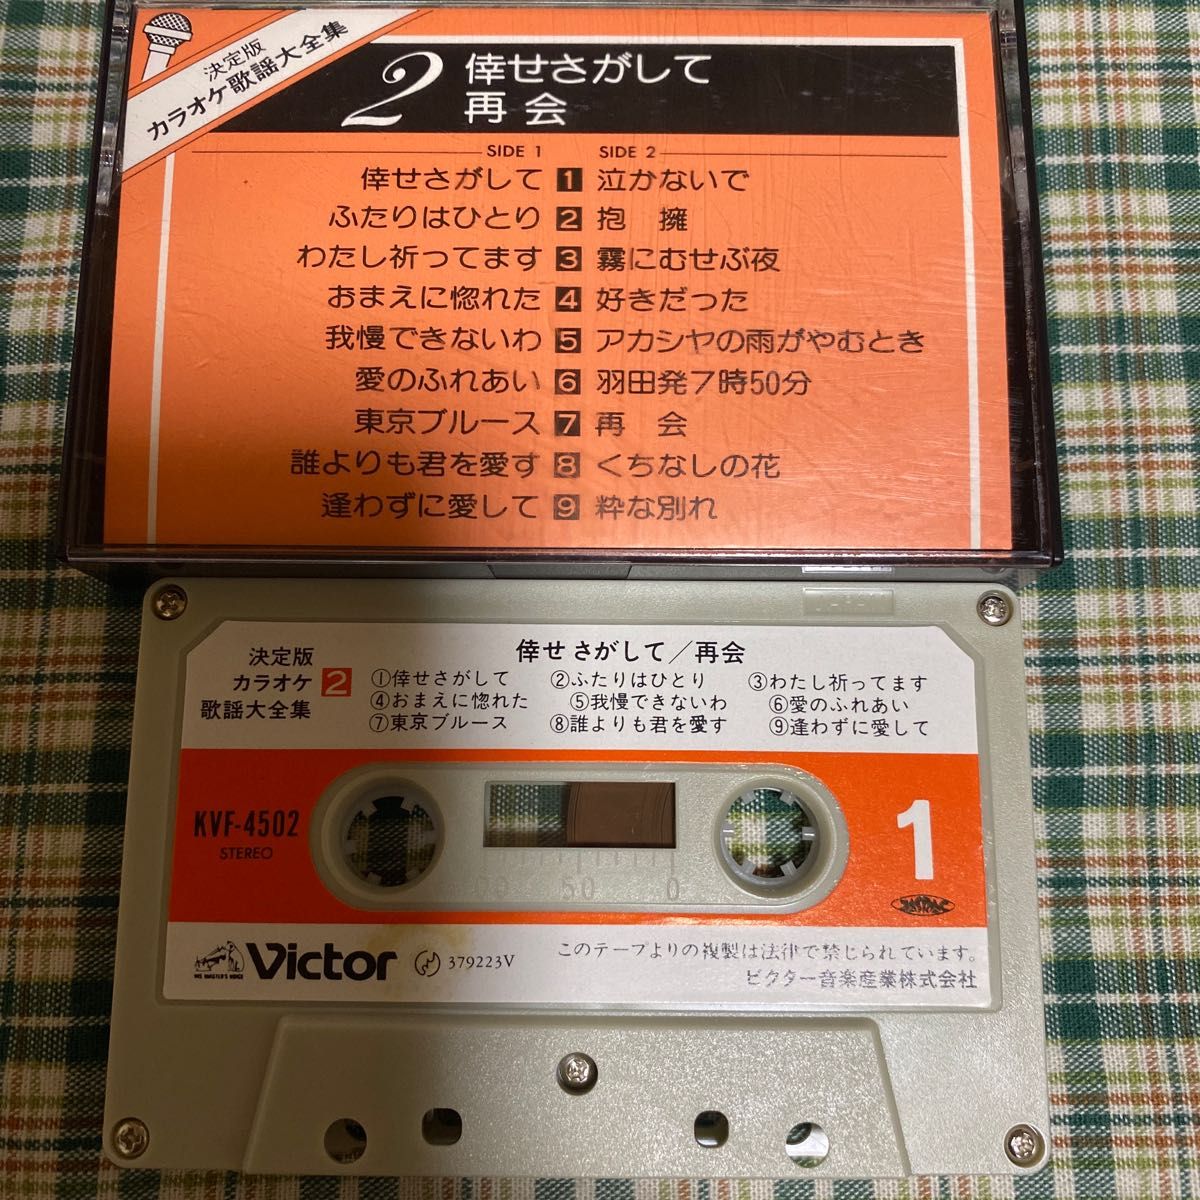 決定版 カラオケ歌謡大全集 カセットテープ 7本組